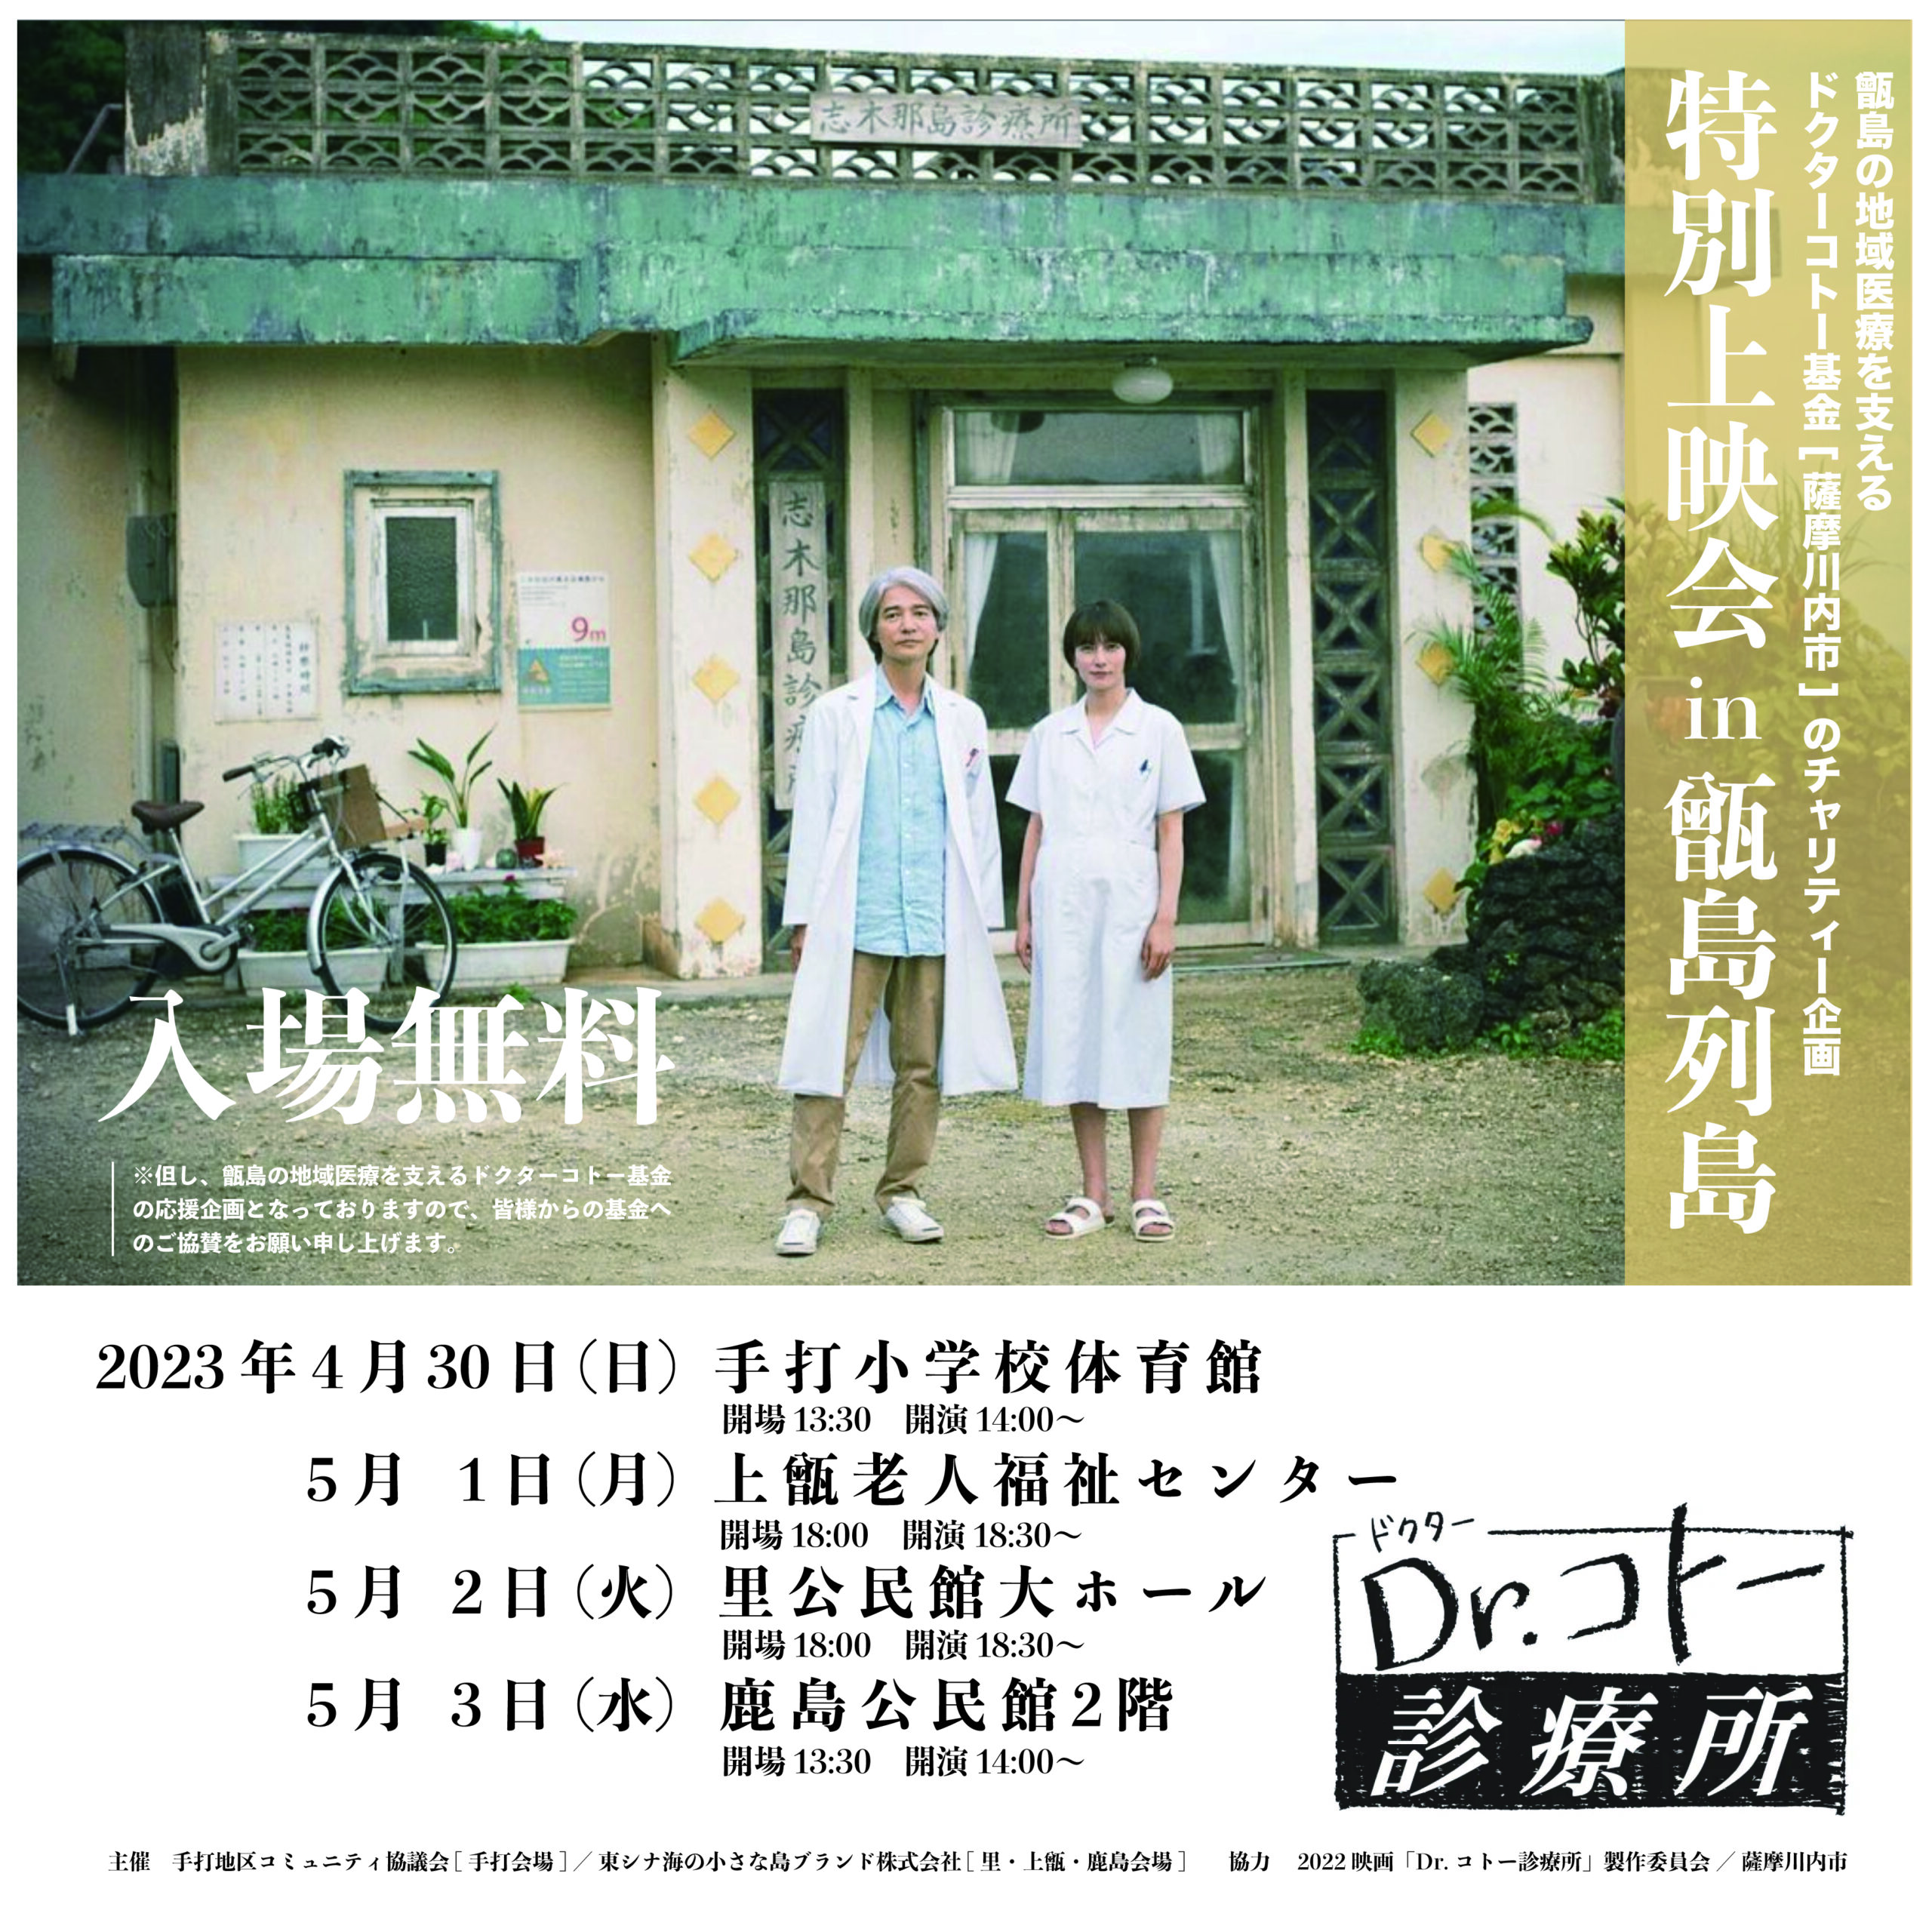 映画2022 Dr.コトー診療所の特別上映会 in 甑島列島 が決定しました。